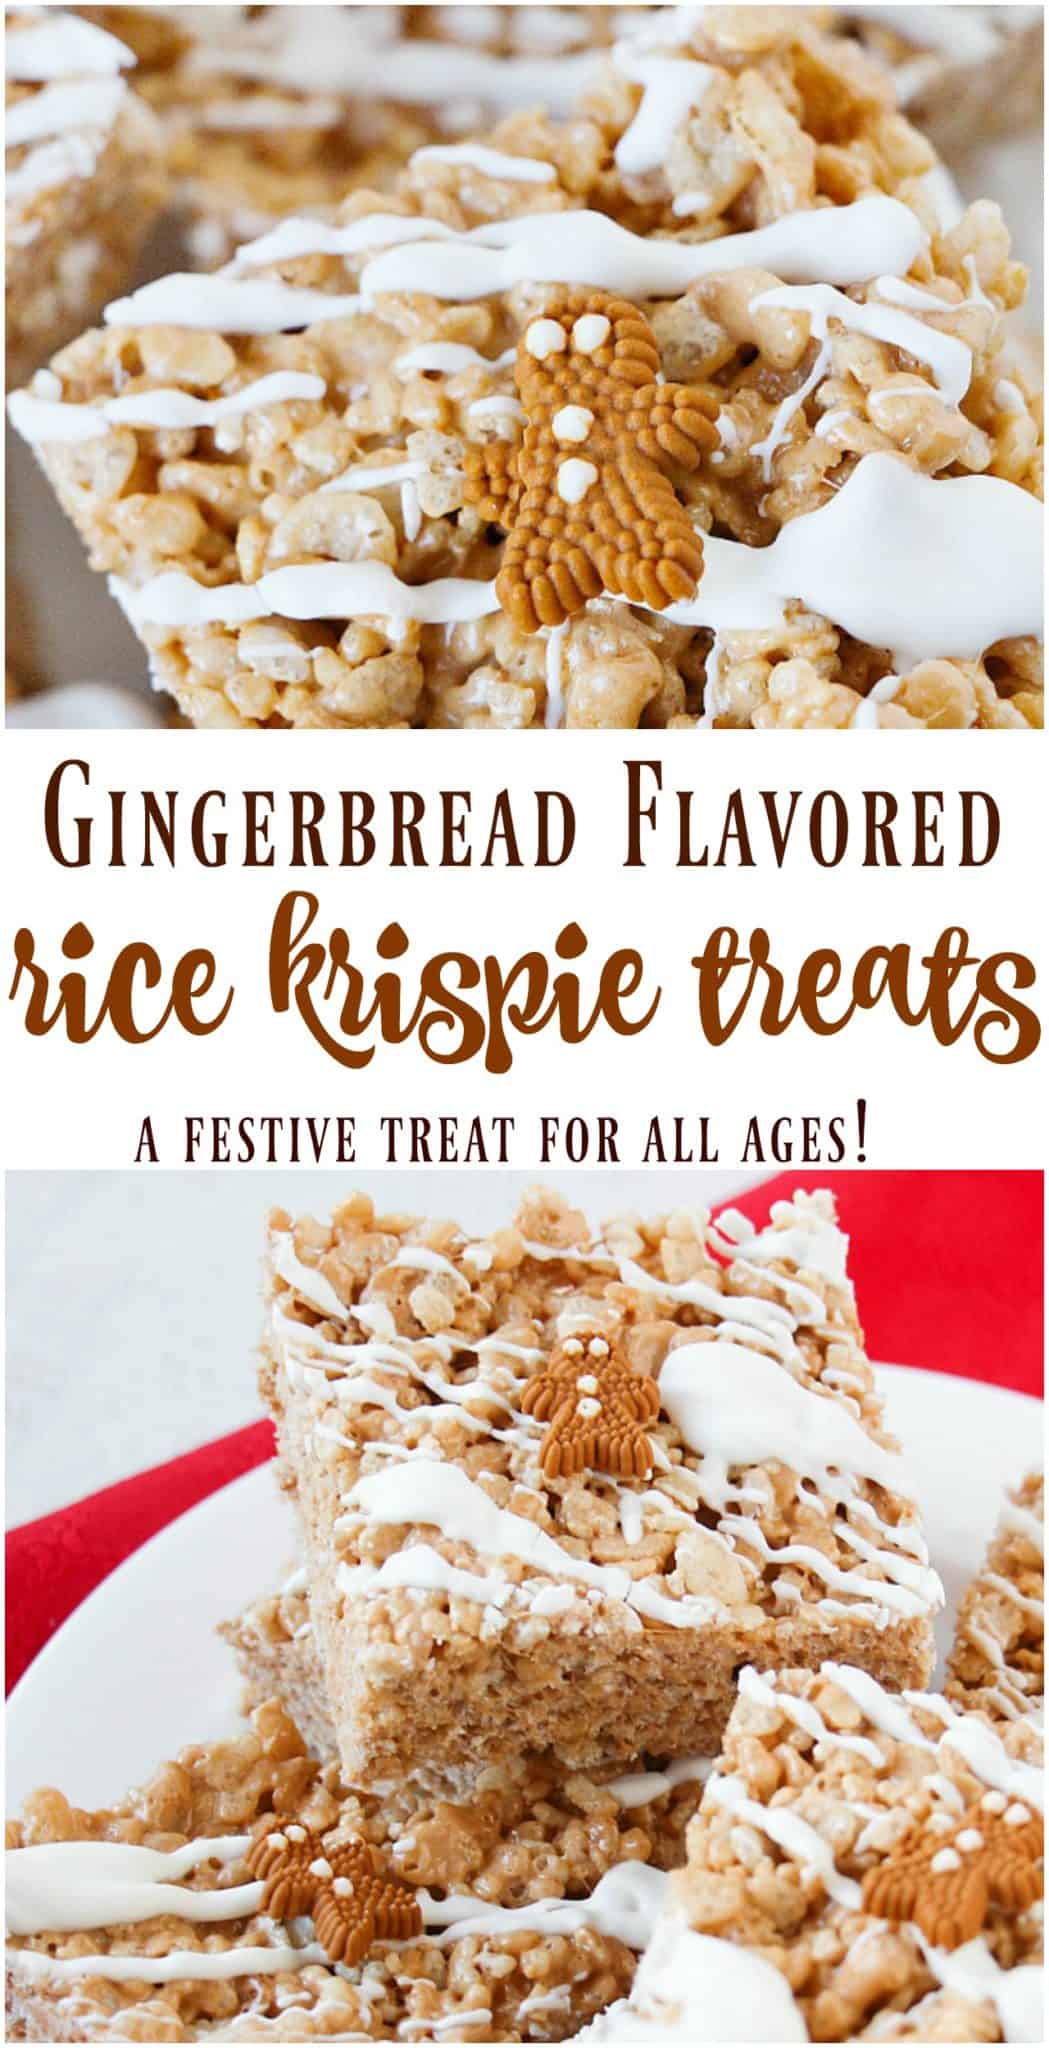 gingerbread rice krispie treats